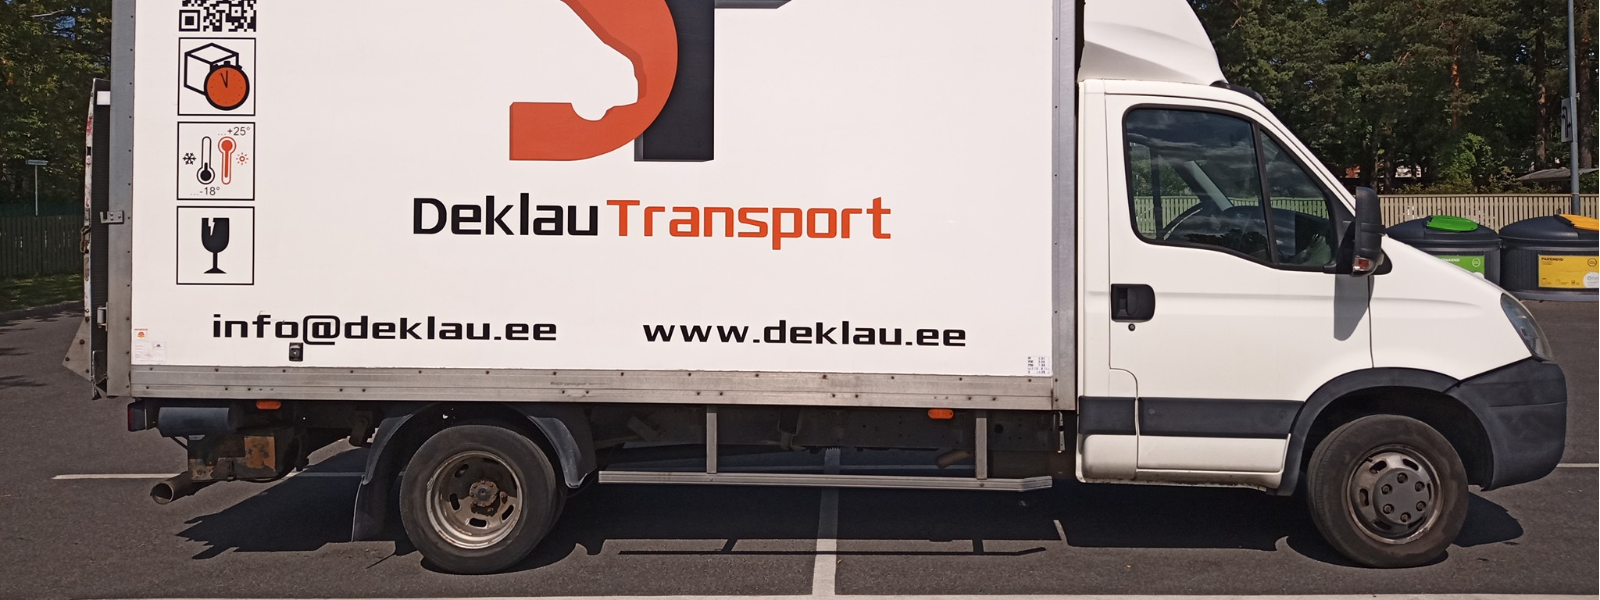 DEKLAU TRANSPORT OÜ - Deklau Transport on aastast 2005 tegutsev, eriti nõudlikule kliendile teenuseid pakkuv ettevõte. ...